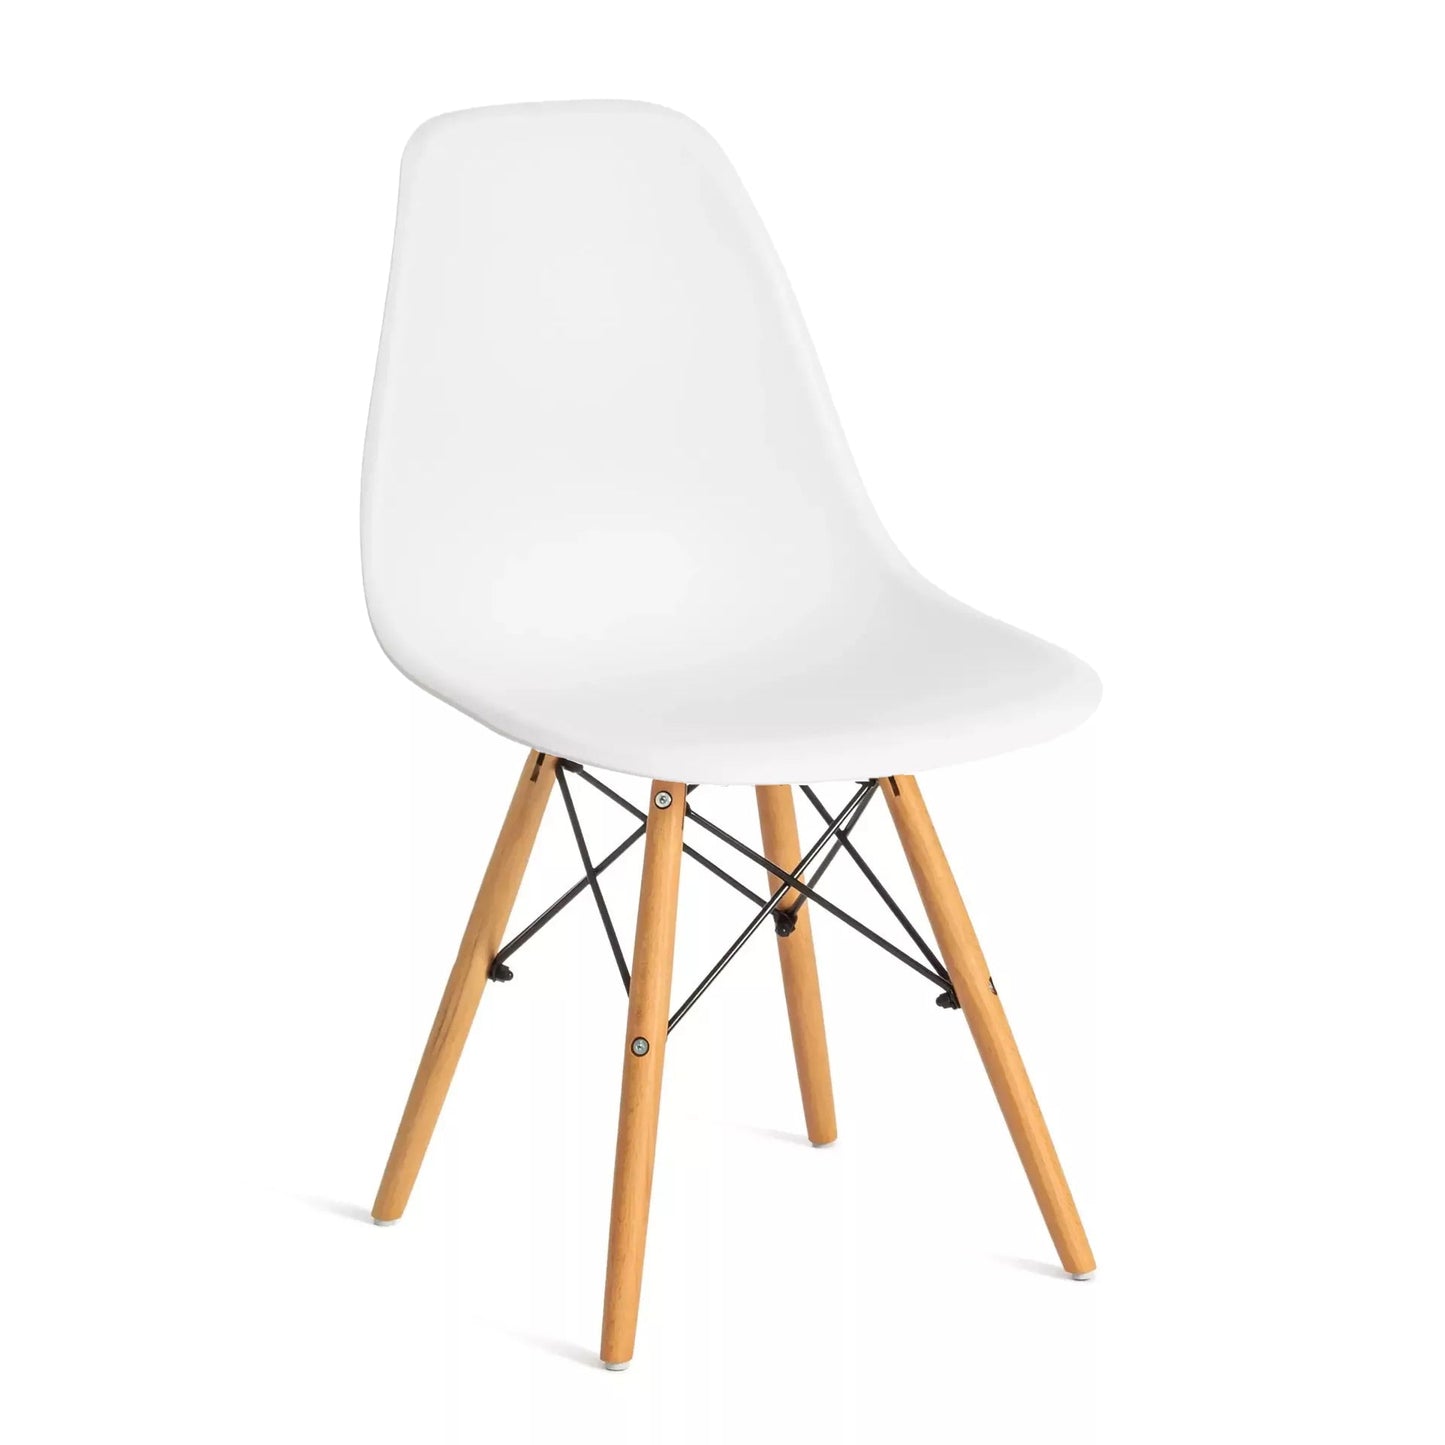 Eiffel acrylic chair - white - STOK36 – Chic Homz